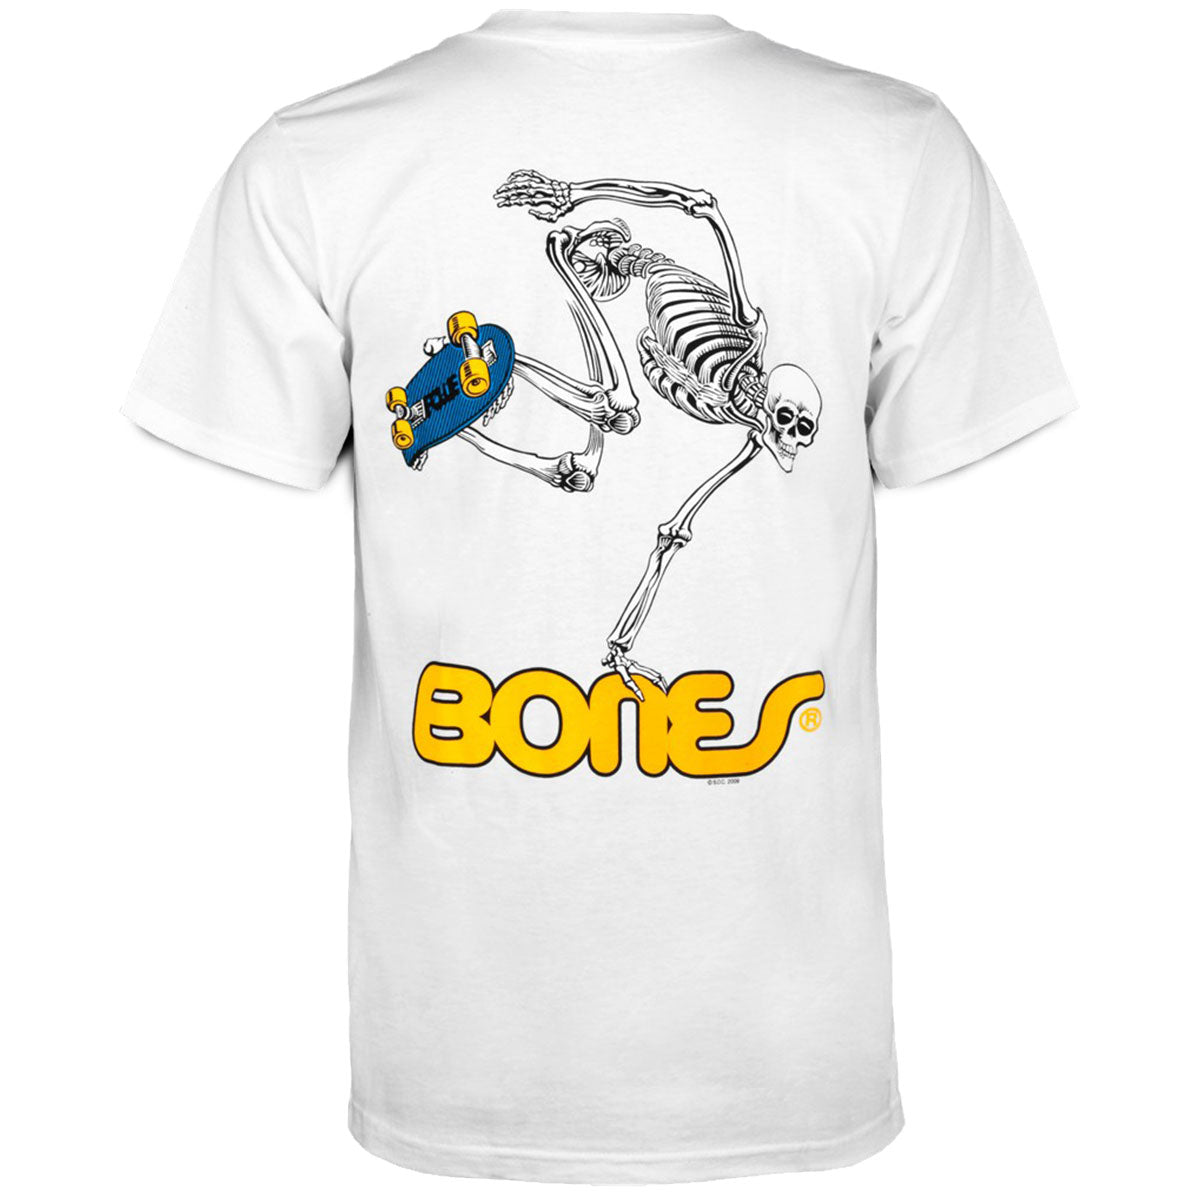 Powell-Peralta Skateboard Skeleton T-Shirt - White image 1